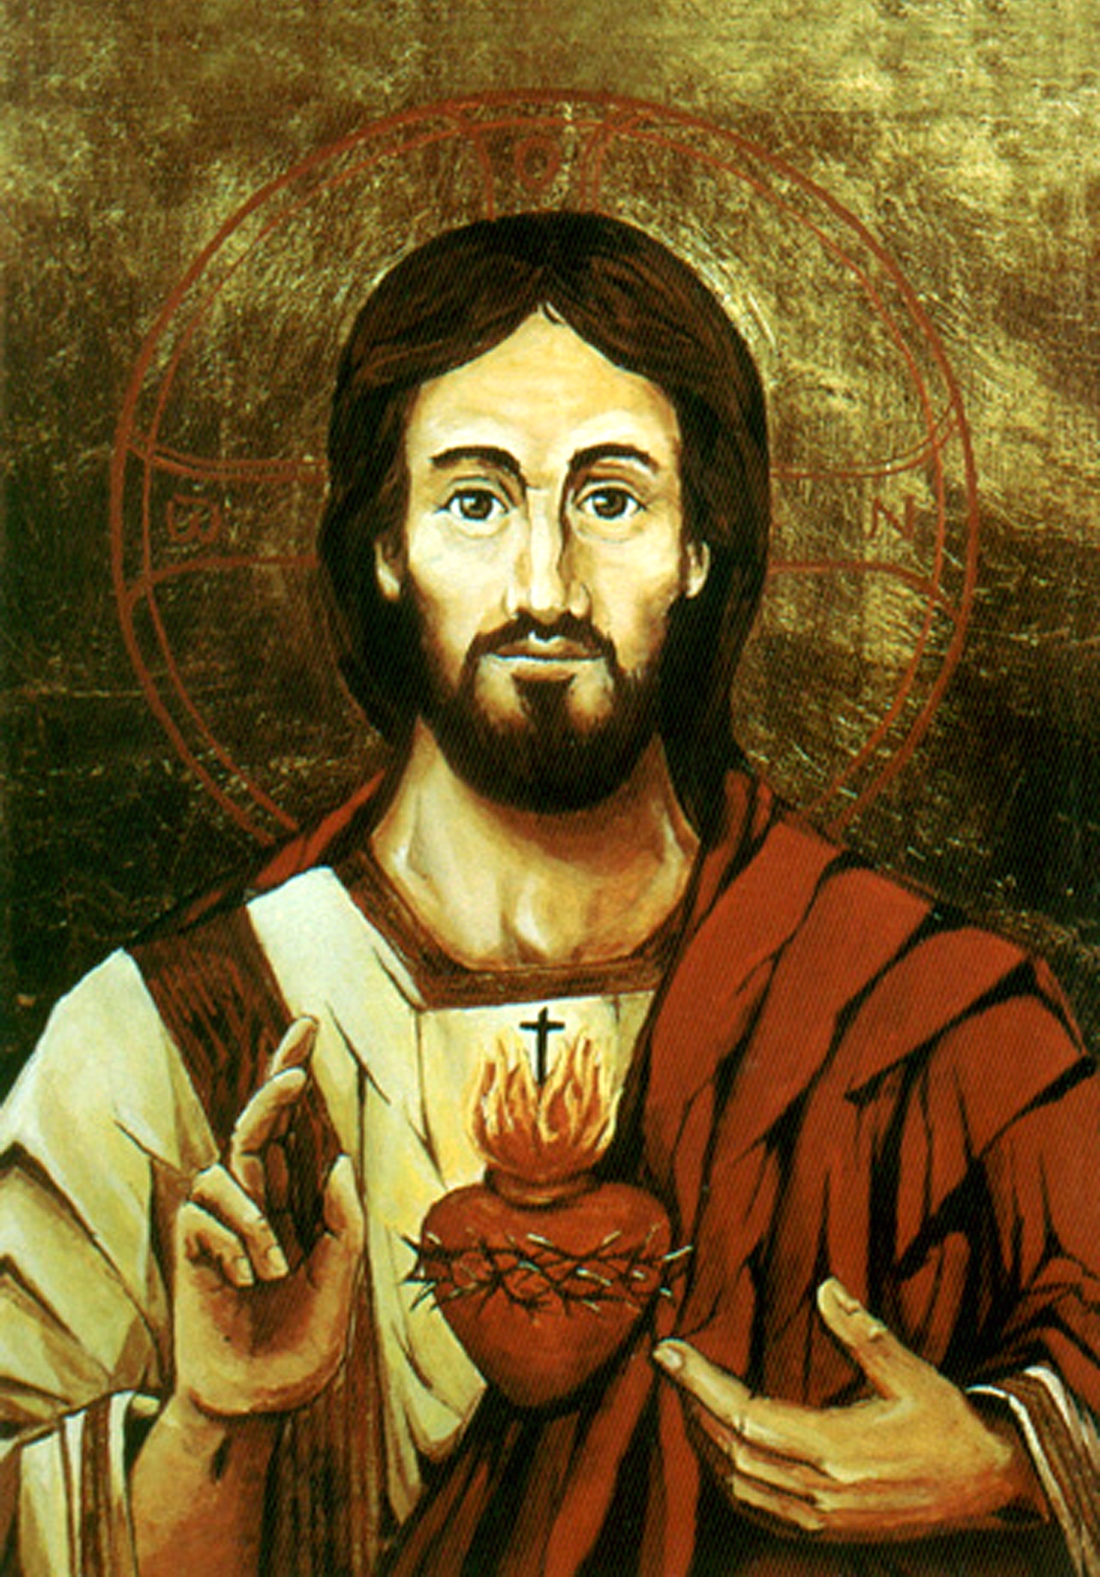 Papa Jesus - Painting - Yesu